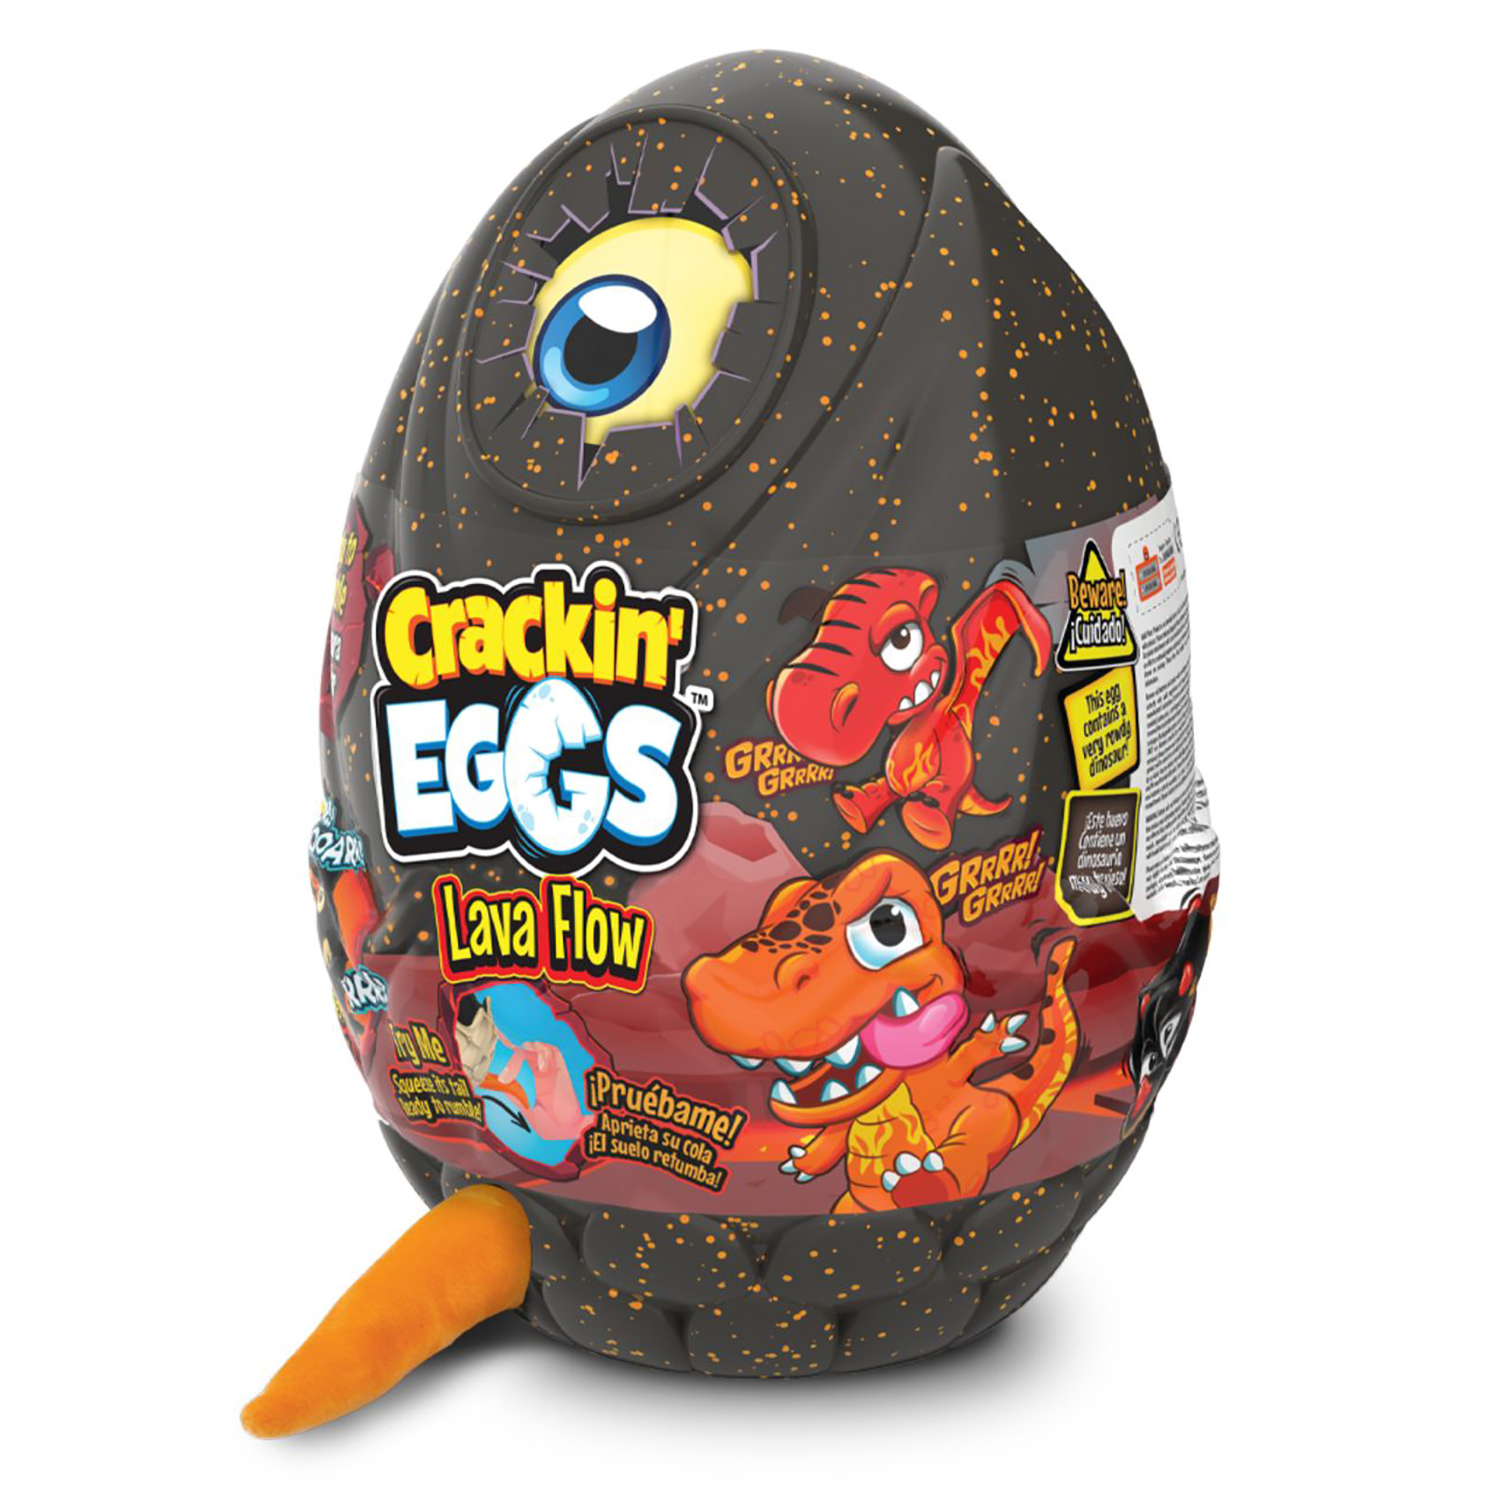 Мягкая игрушка Crackin' Eggs Динозавр оранжевый в яйце, серия Лава, 22 см мягкая игрушка crackin eggs динозавр 12 см в яйце серый sk012